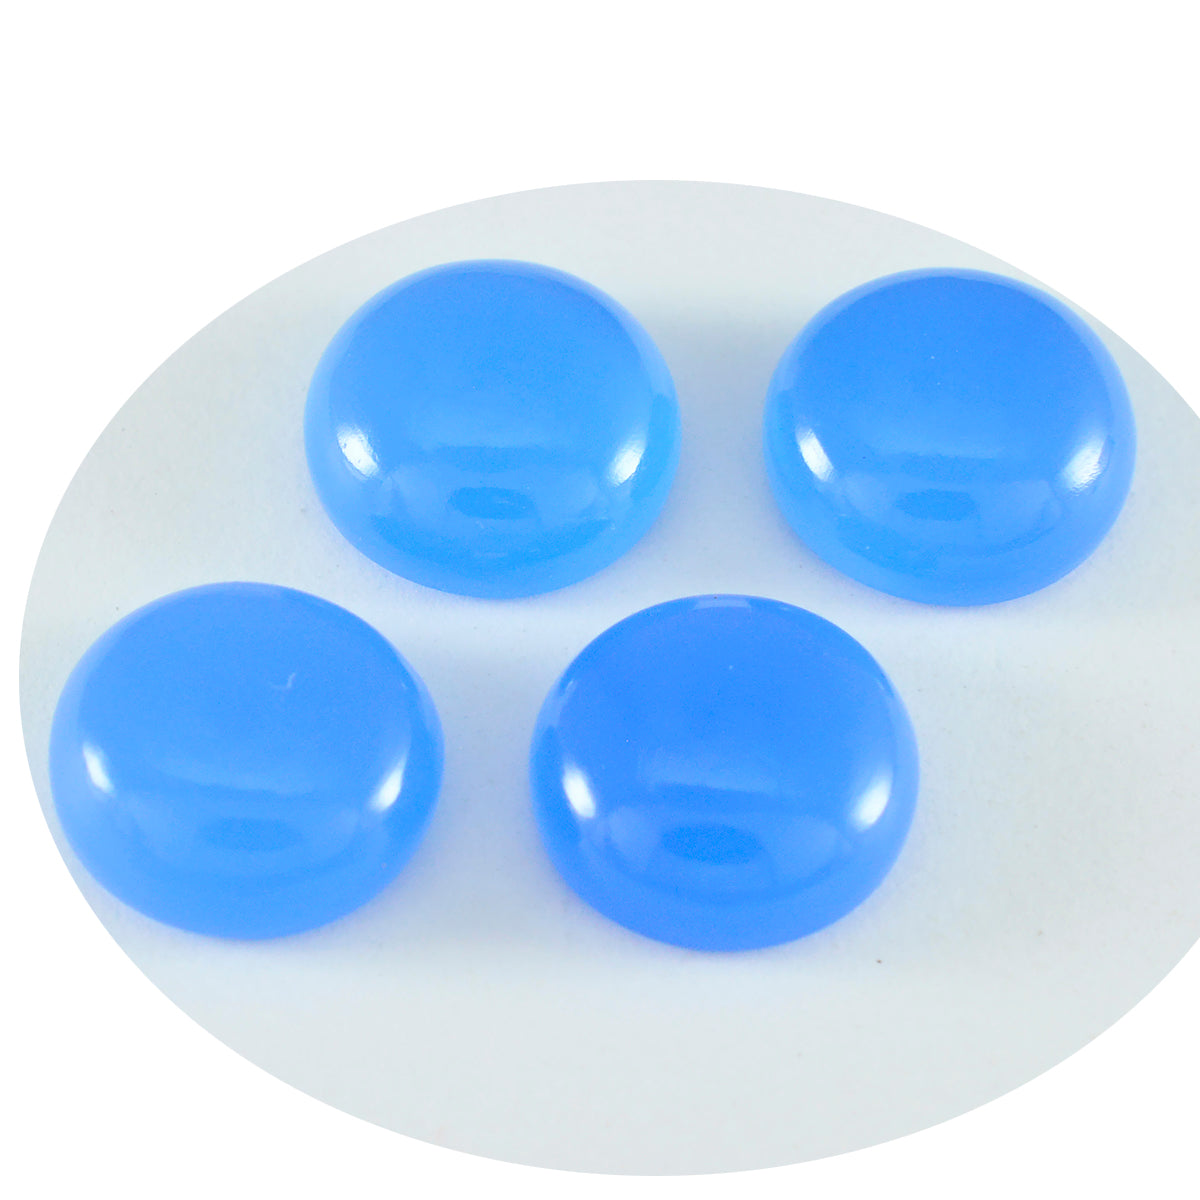 Riyogems 1 Stück blauer Chalcedon-Cabochon, 7 x 7 mm, runde Form, schöner Qualitätsstein